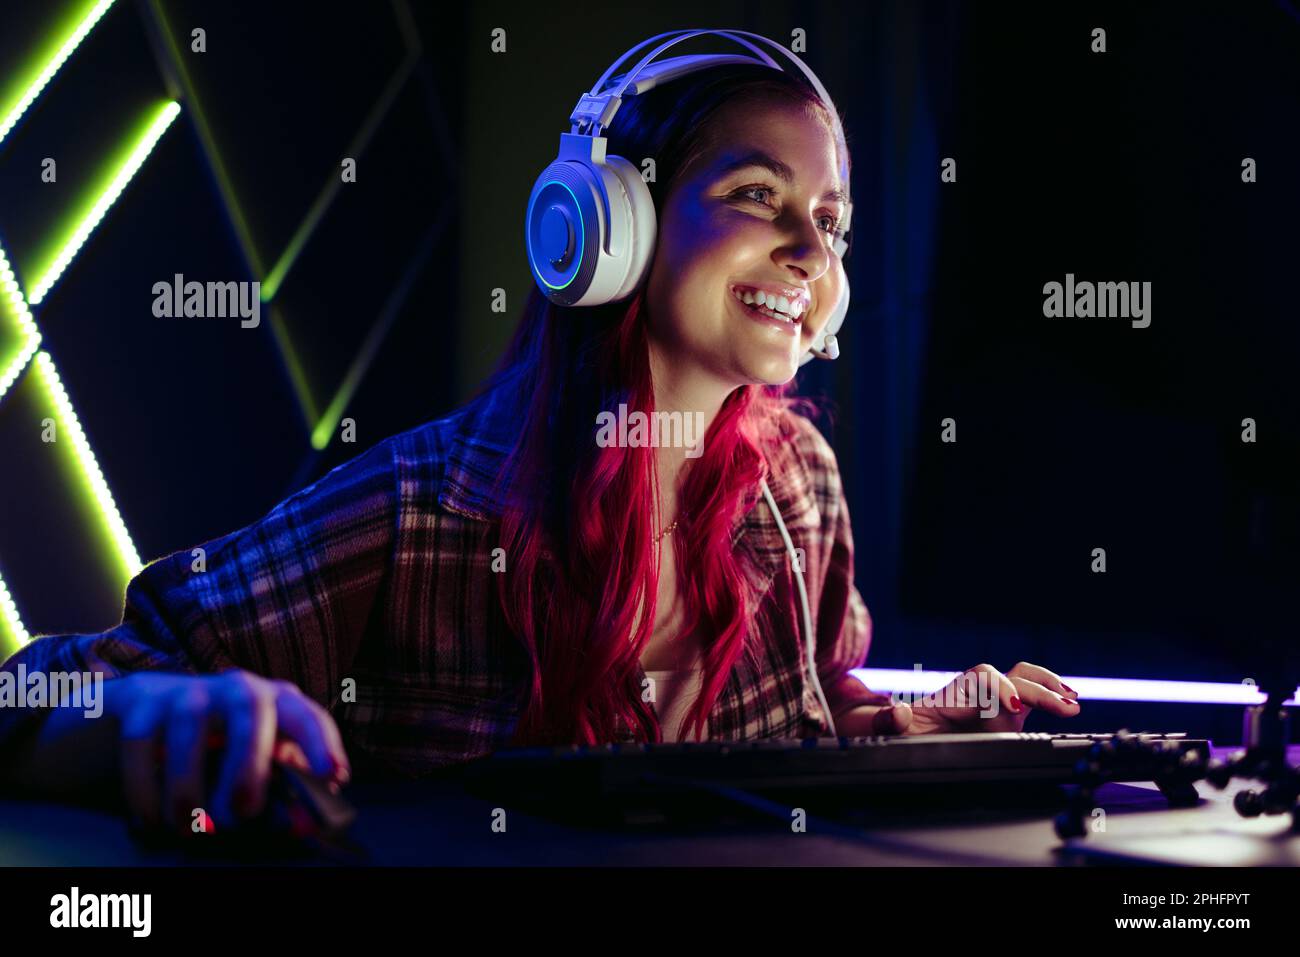 Glückliche Gamer-Frau lächelt auf ihren Computerbildschirm, während sie nachts ein Singleplayer-Videospiel spielt. Ein engagierter Videospielspieler, der sich wie ein Sch amüsiert Stockfoto